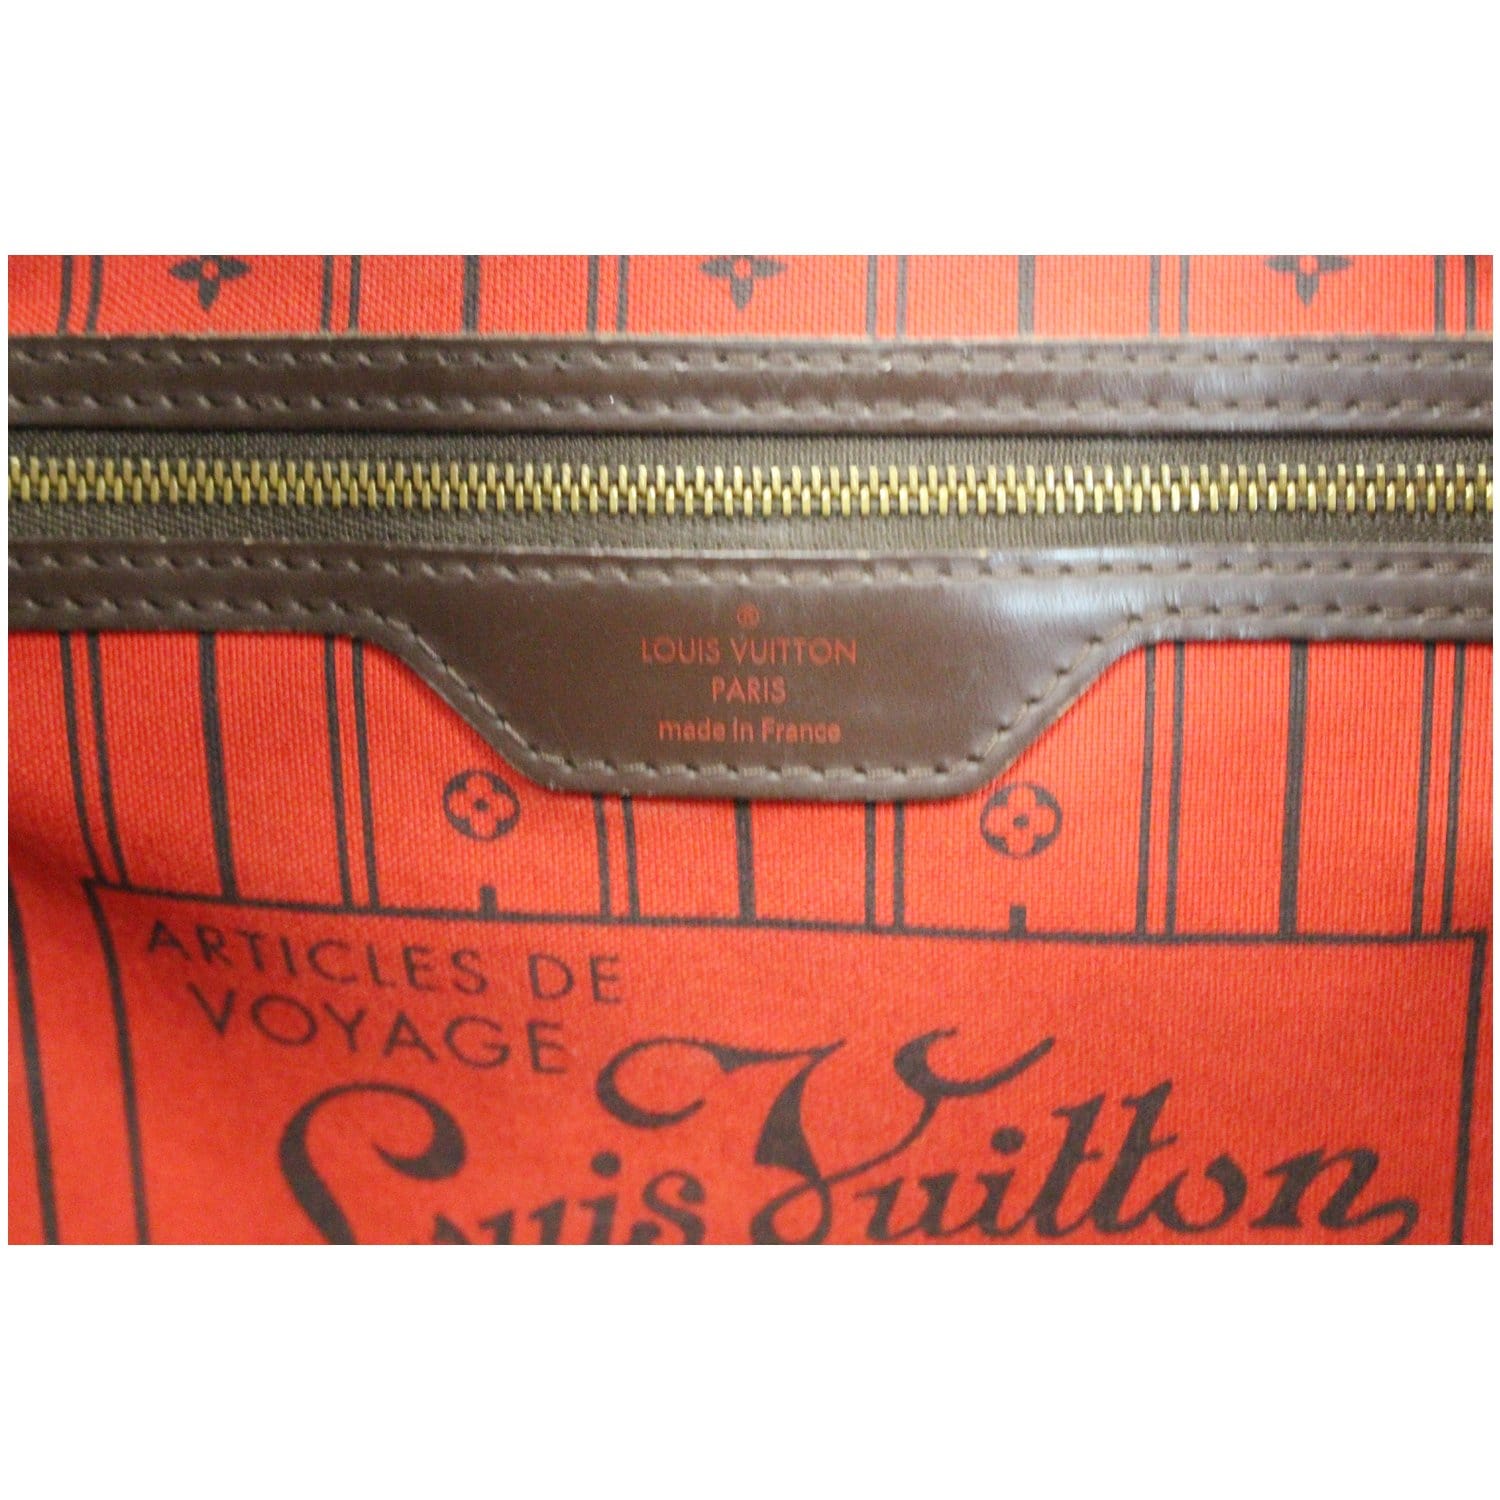 Louis Vuitton Damier Ebene Neverfull GM N41357  Louis vuitton handbags  outlet, Cheap louis vuitton handbags, Louis vuitton bag neverfull